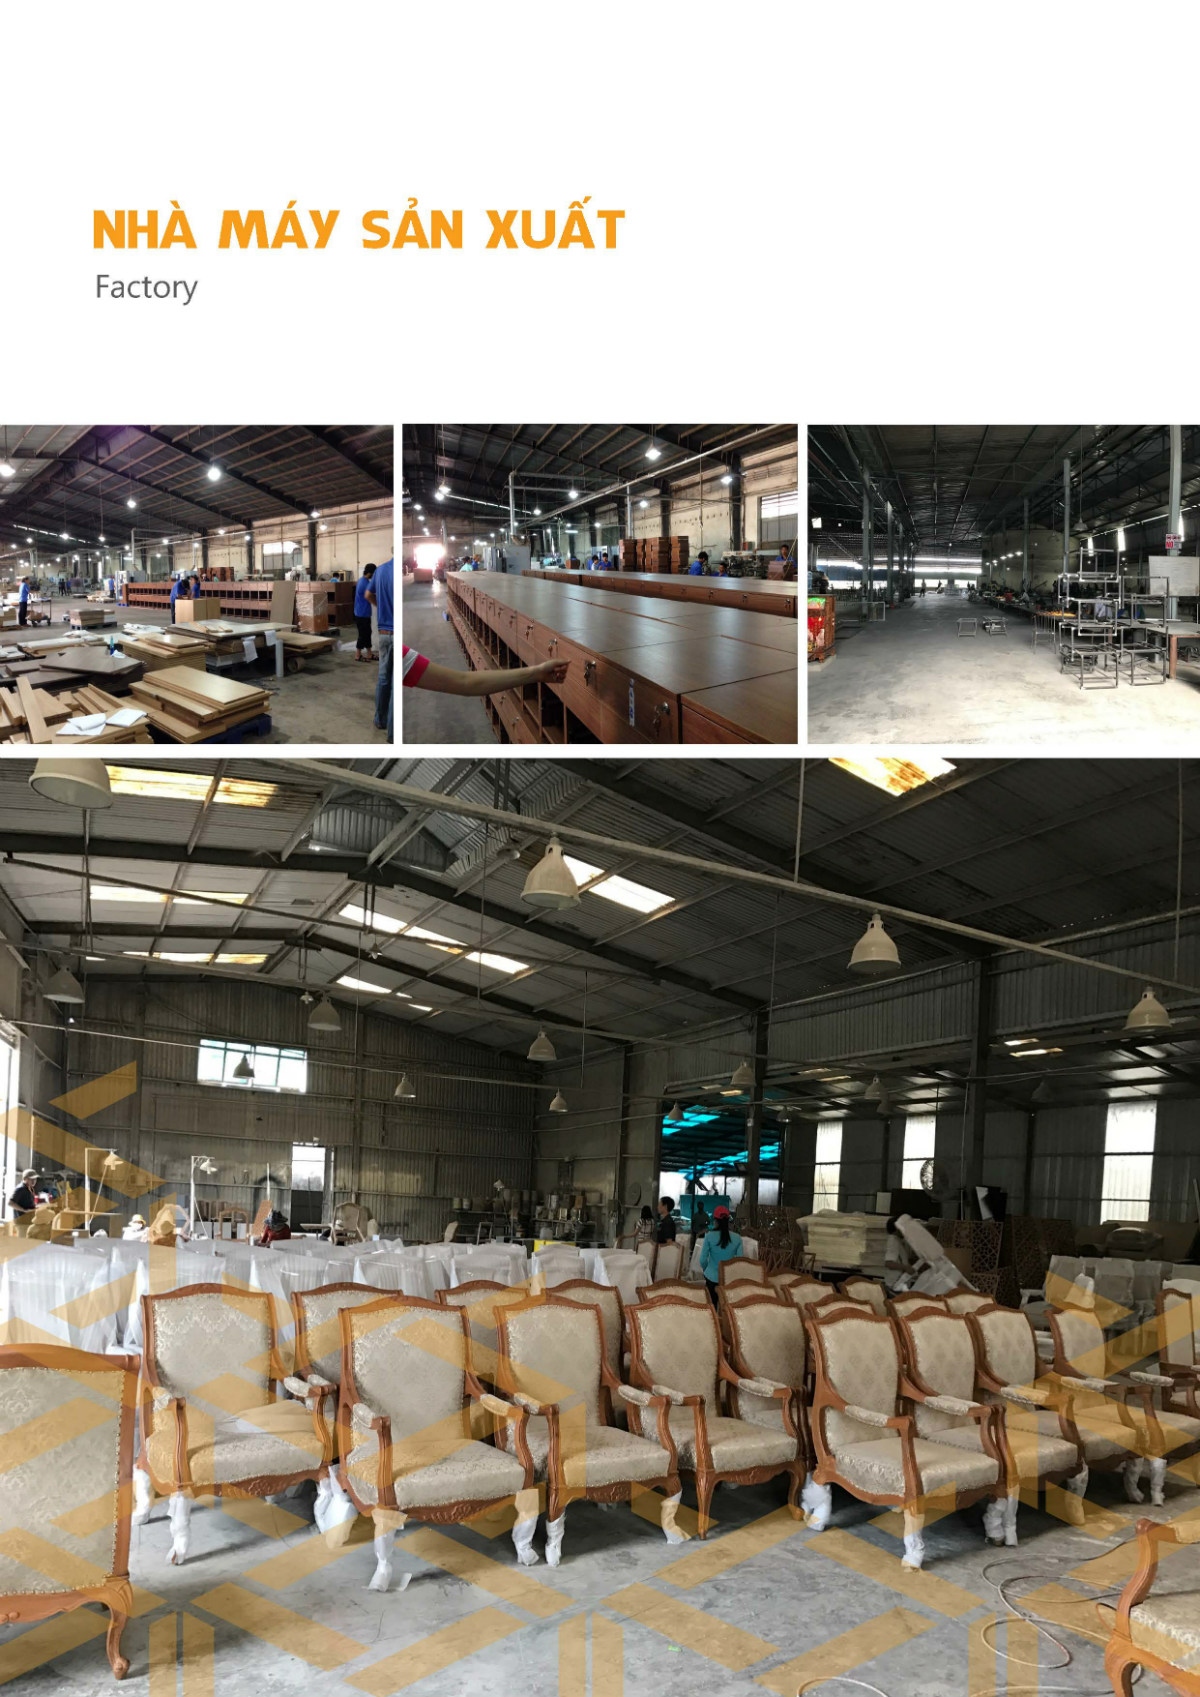 sieu-chung-ky-sck-factory-nha-may-san-xuat (7)